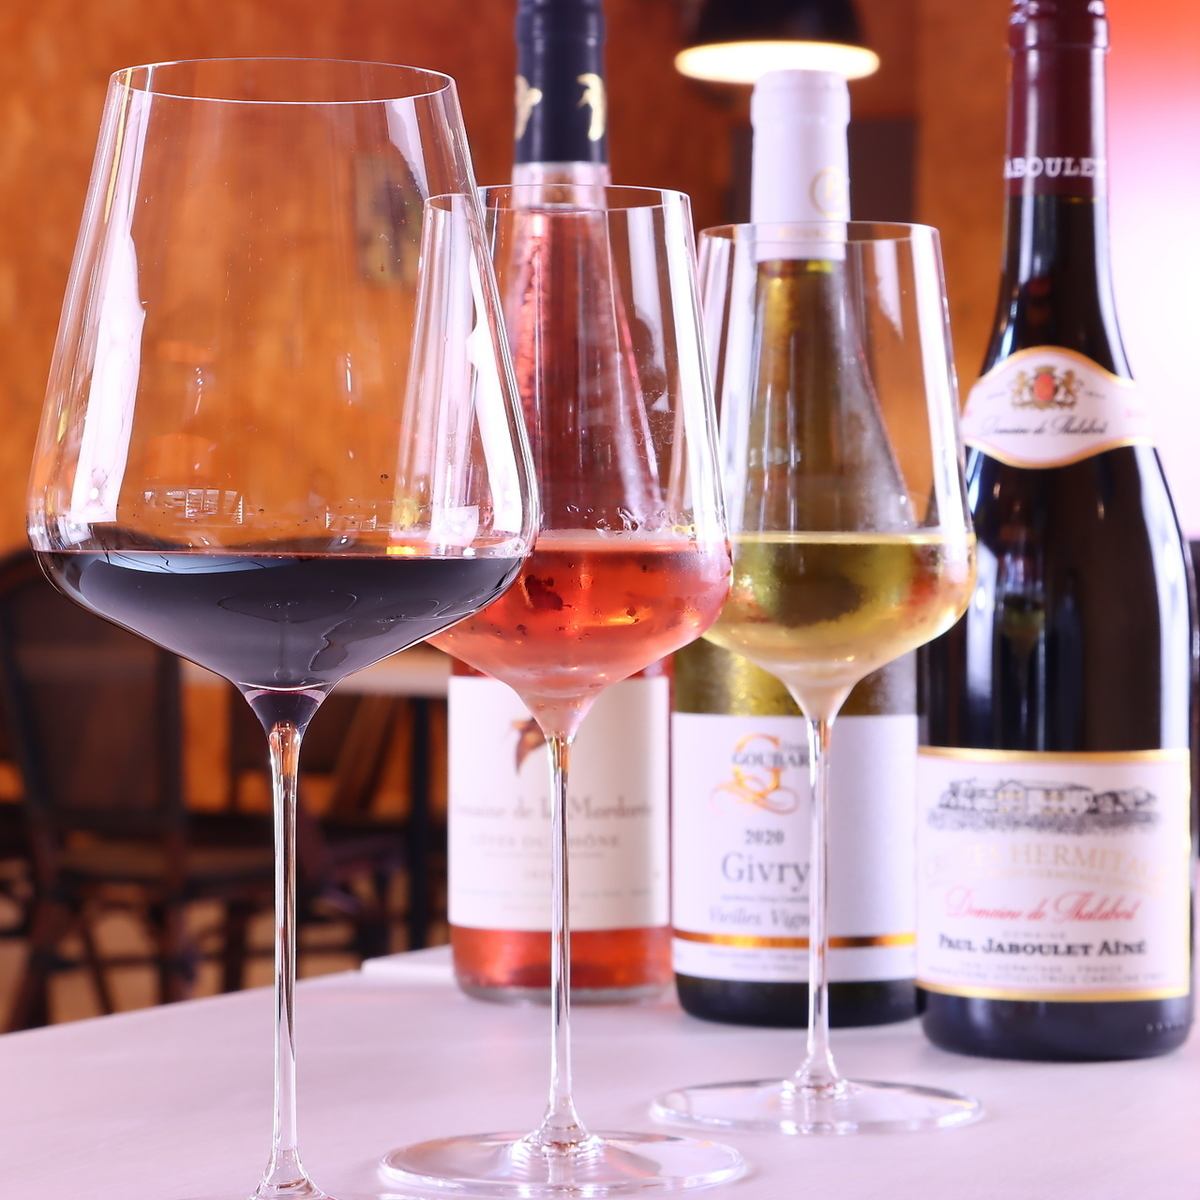 深受葡萄酒爱好者的喜爱 ◆ 也可用于招待客人